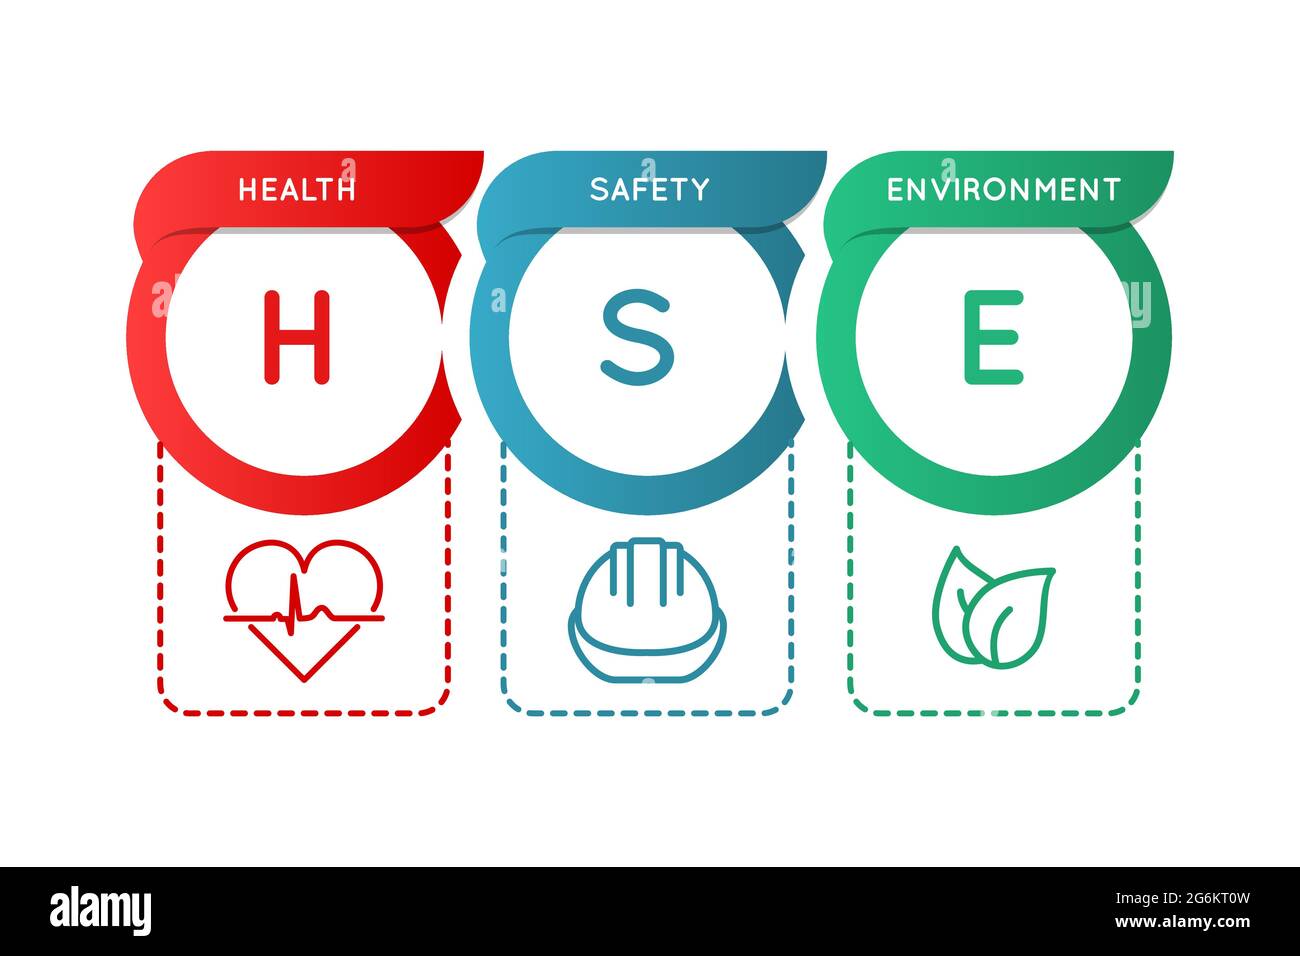 HSE. Gesundheit, Sicherheit und Umwelt. Infografik zu Arbeitssicherheit und Gesundheitsschutz. Sicherer Industrie- und Arbeitsplatzstandard. Akronym mit Blatt, Helmsymbol Stock Vektor